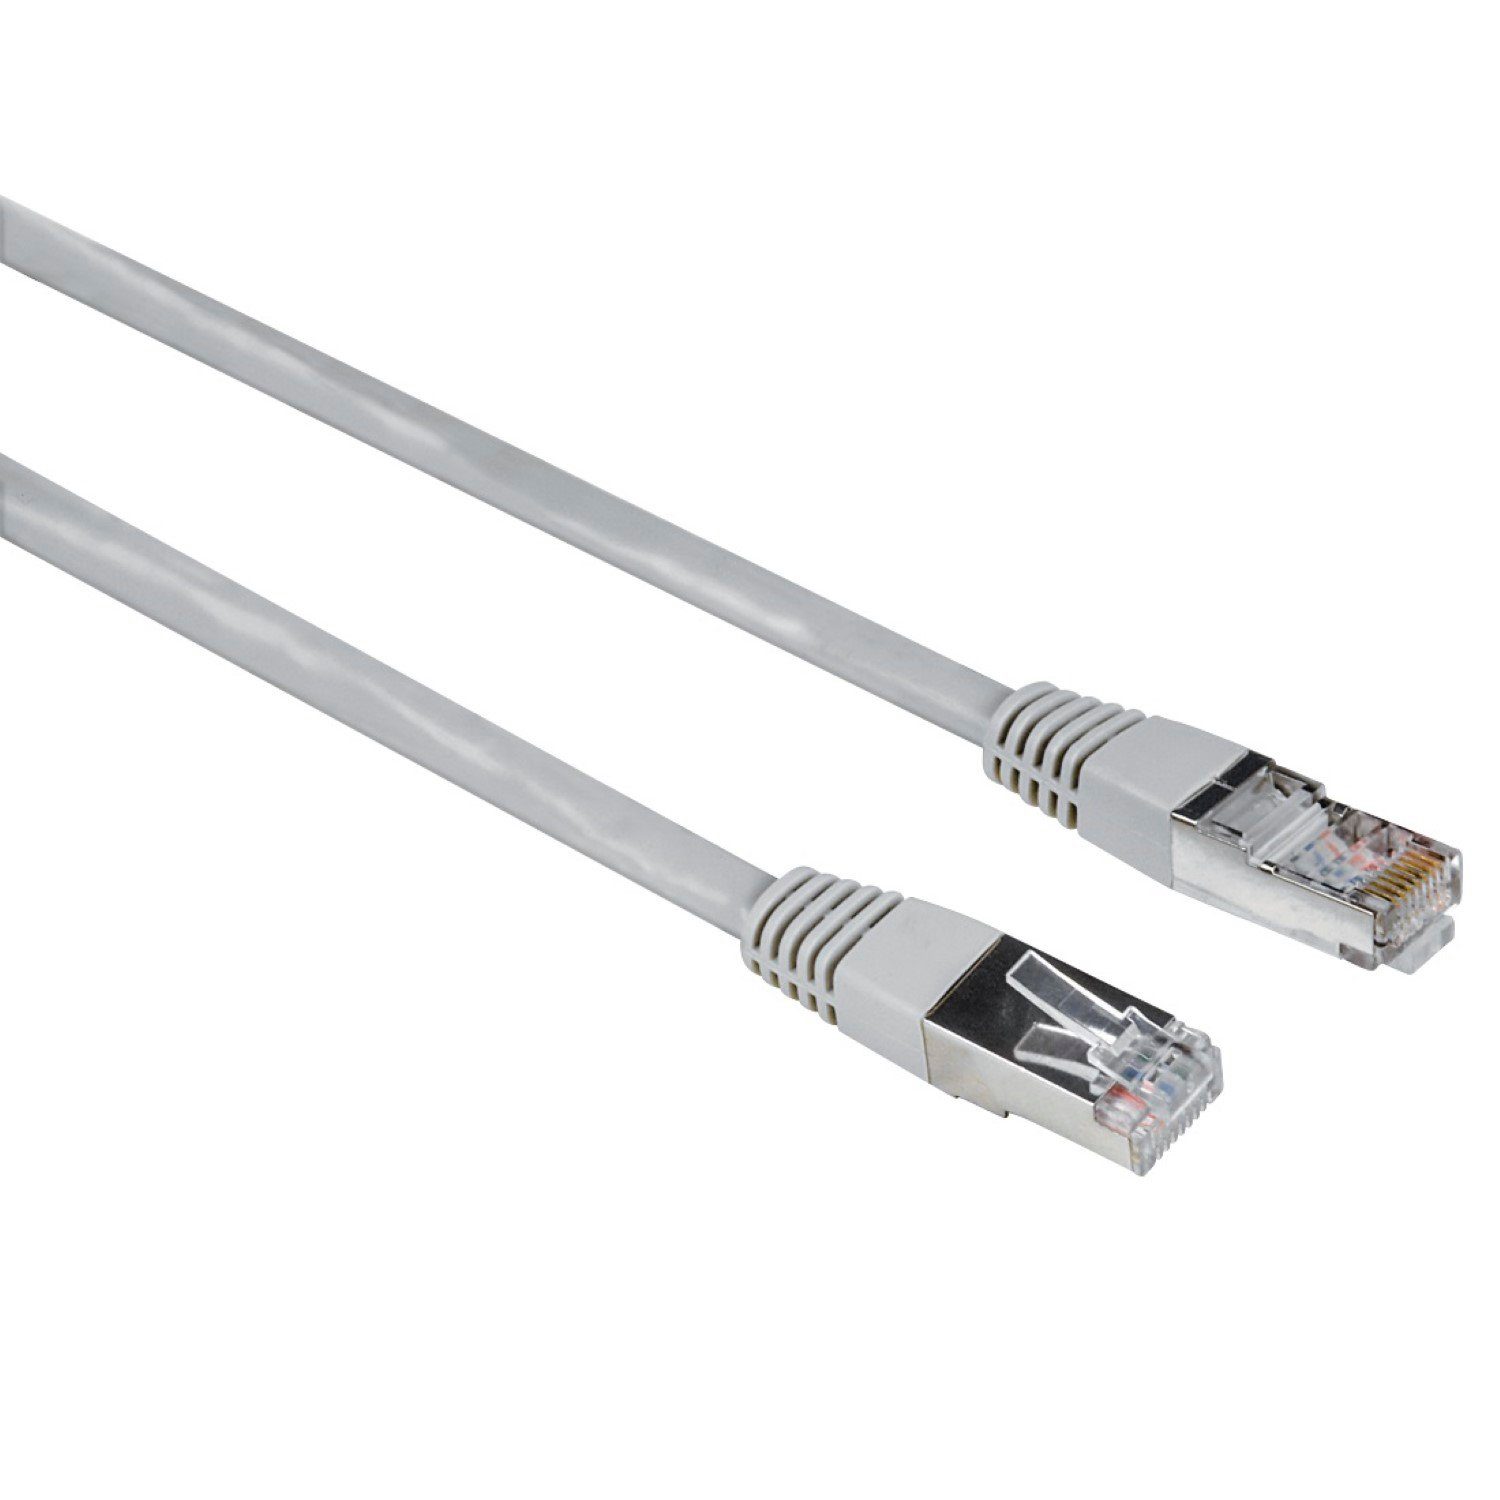 Hama 5m Netzwerk-Kabel Cat5e UTP Lan-Kabel LAN-Kabel, RJ45, Kein (500 cm), Patch-Kabel Cat 5e Gigabit Ethernet